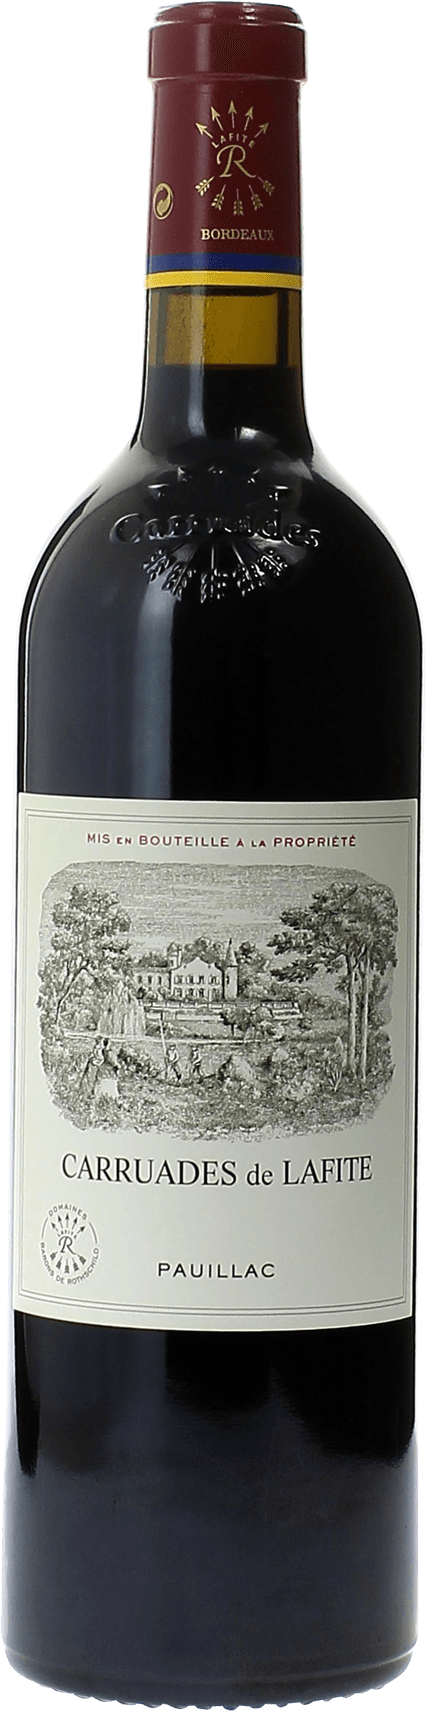 Carruades de lafite 2019 2me vin de LAFITE ROTHSCHILD Pauillac, Bordeaux rouge